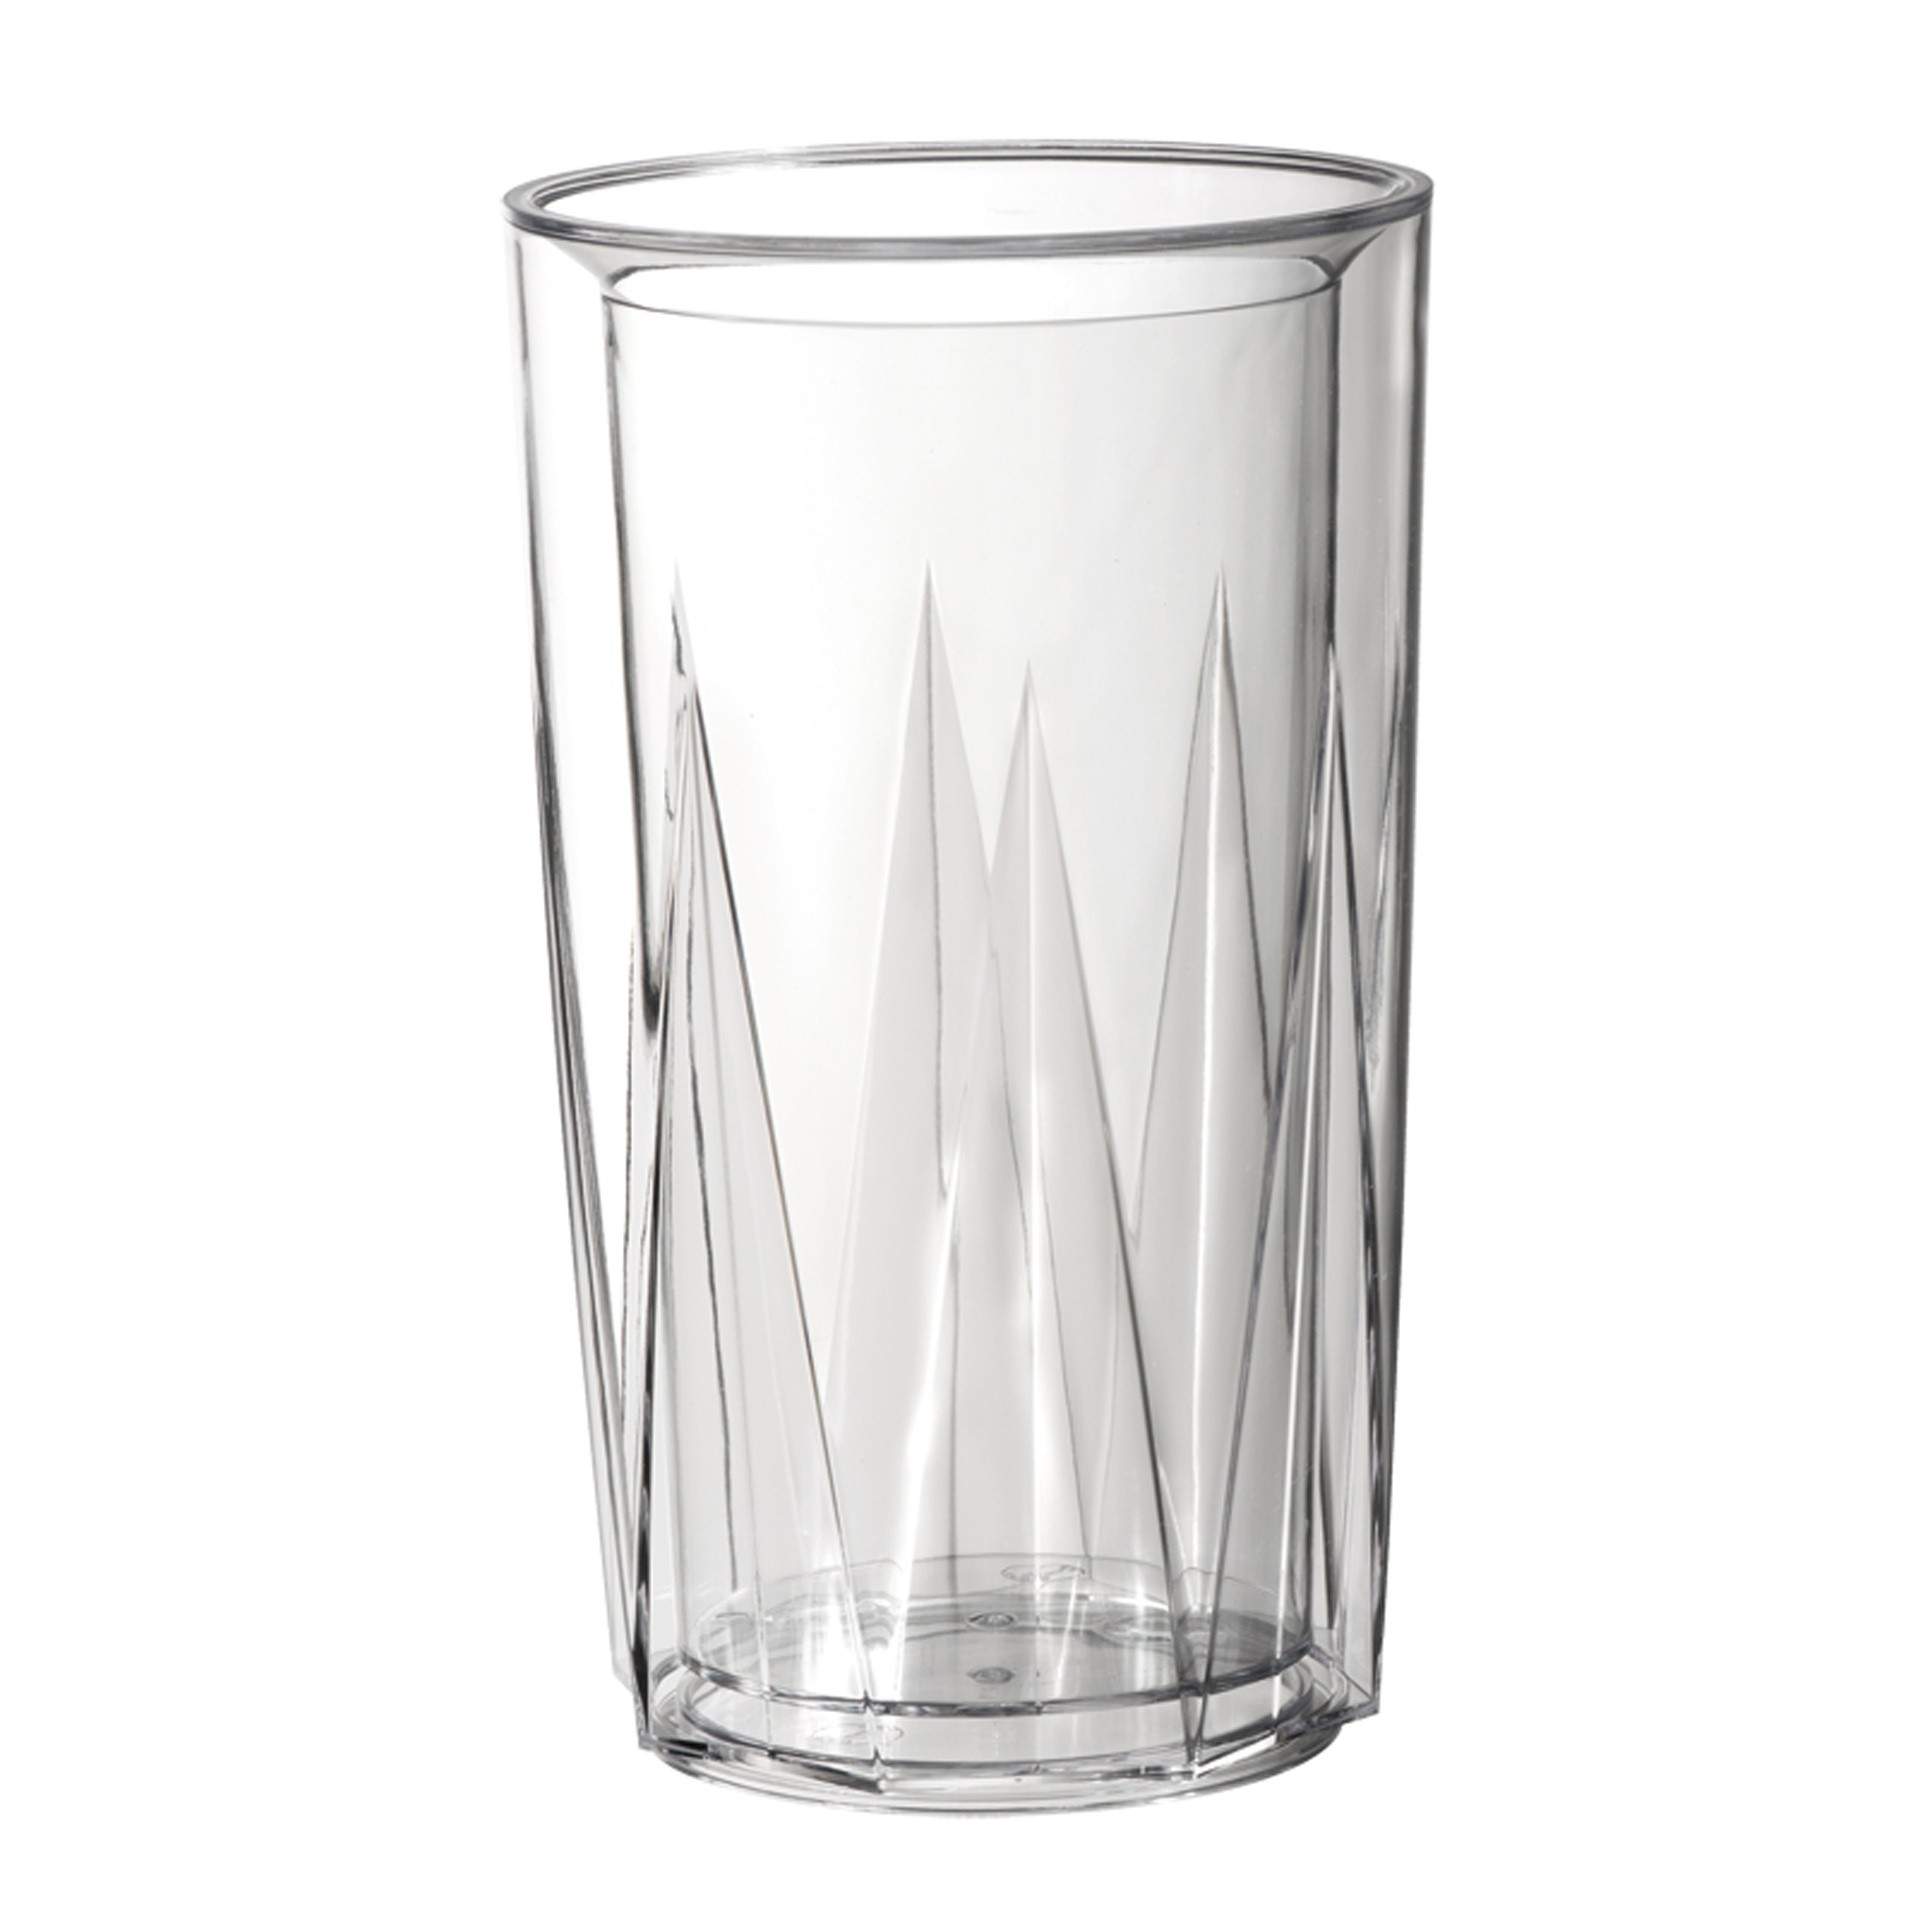 Flaschenkühler - glasklar - Serie Crystal - glasklar - Abm. 23,0 cm - Ø (innen / außen) 10,5 / 13,5 cm - SAN - 36062-B